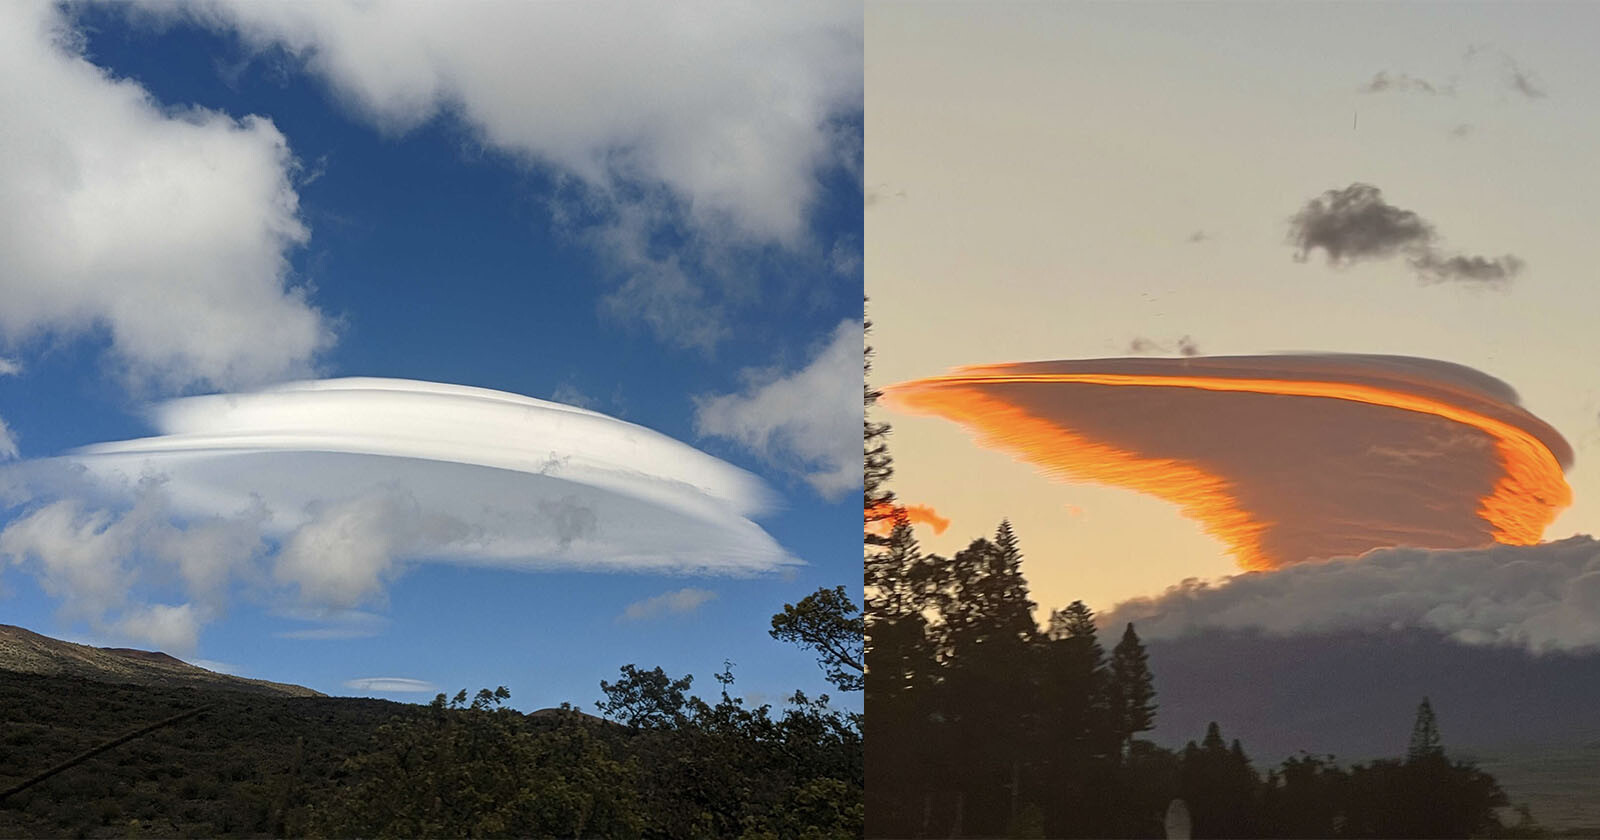  ufo-shaped clouds photographed hawaii 